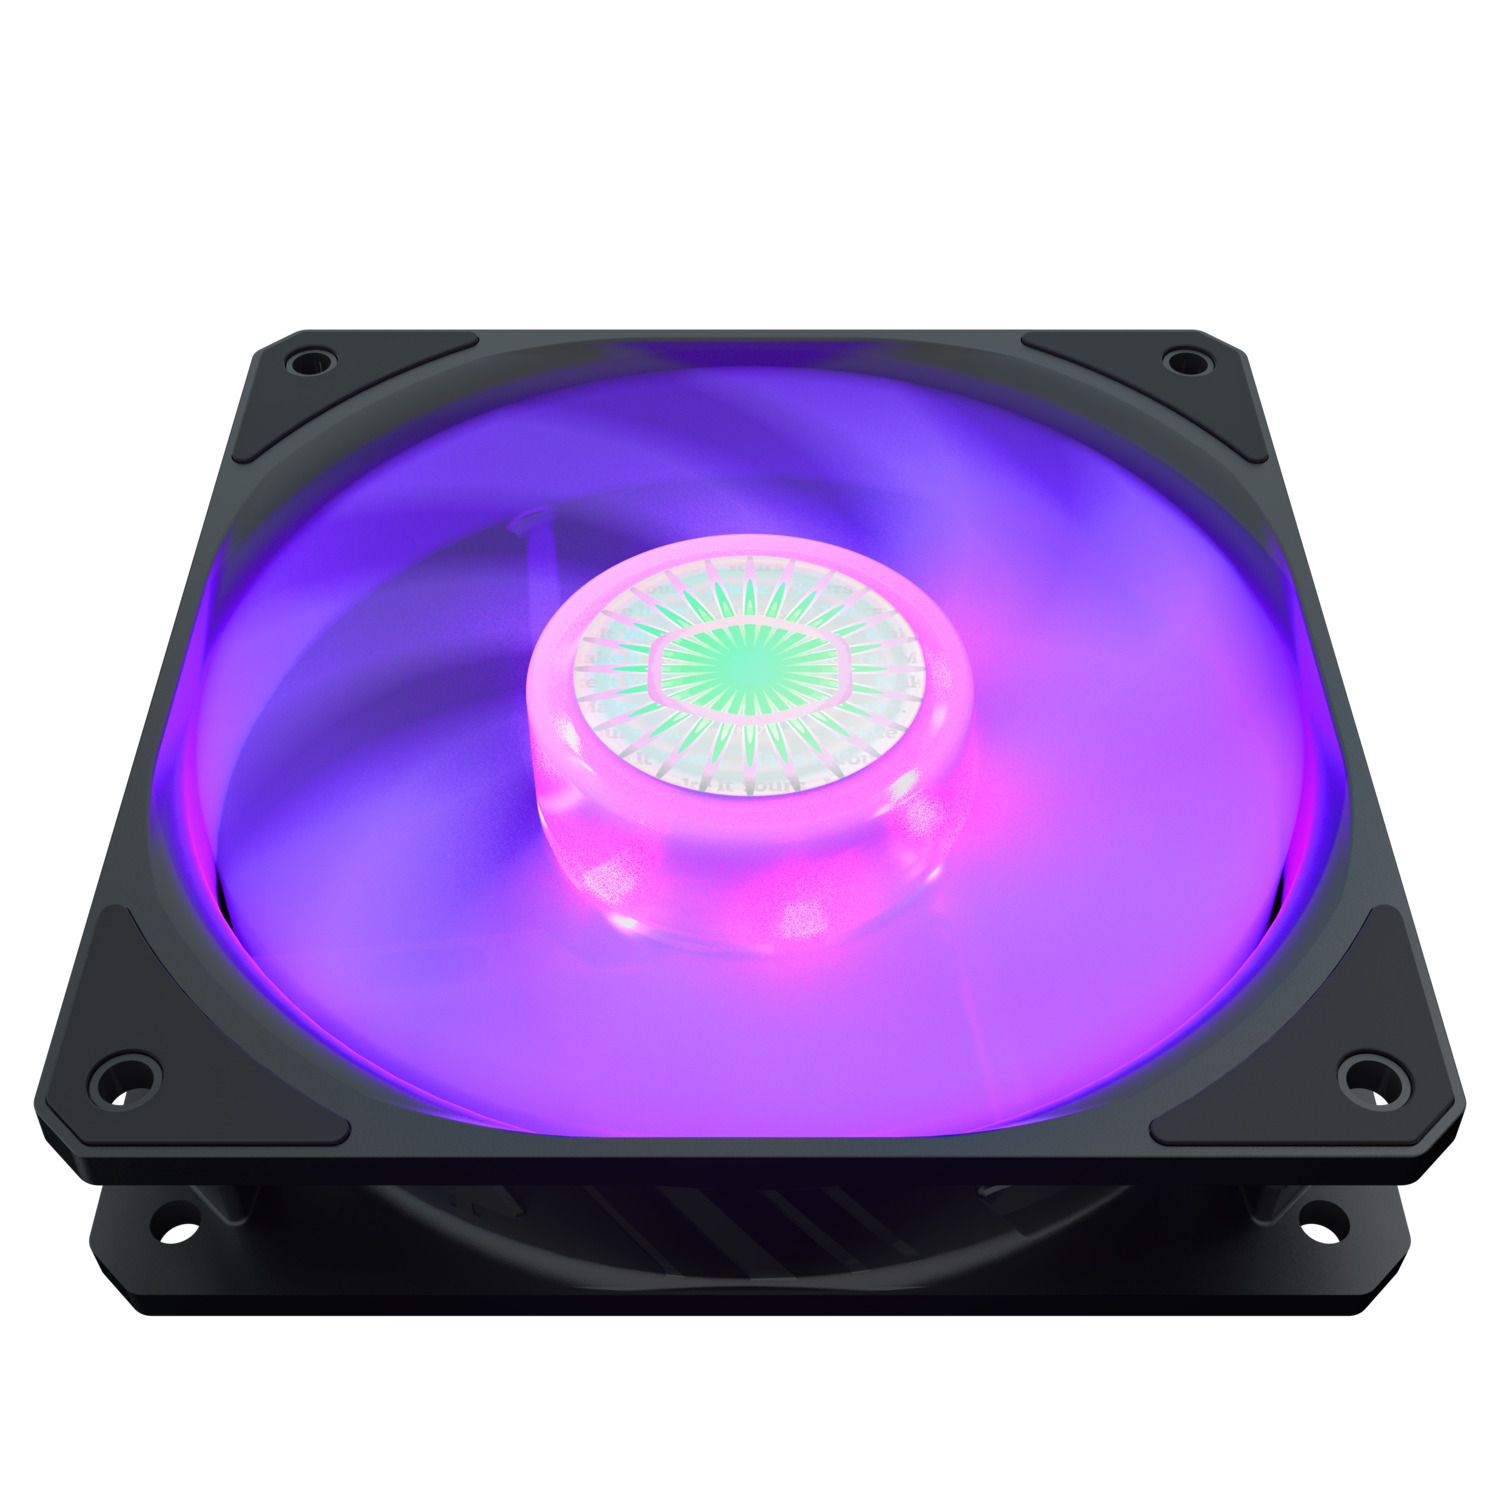  Cooler Master Case Fan SickleFlow 120 RGB